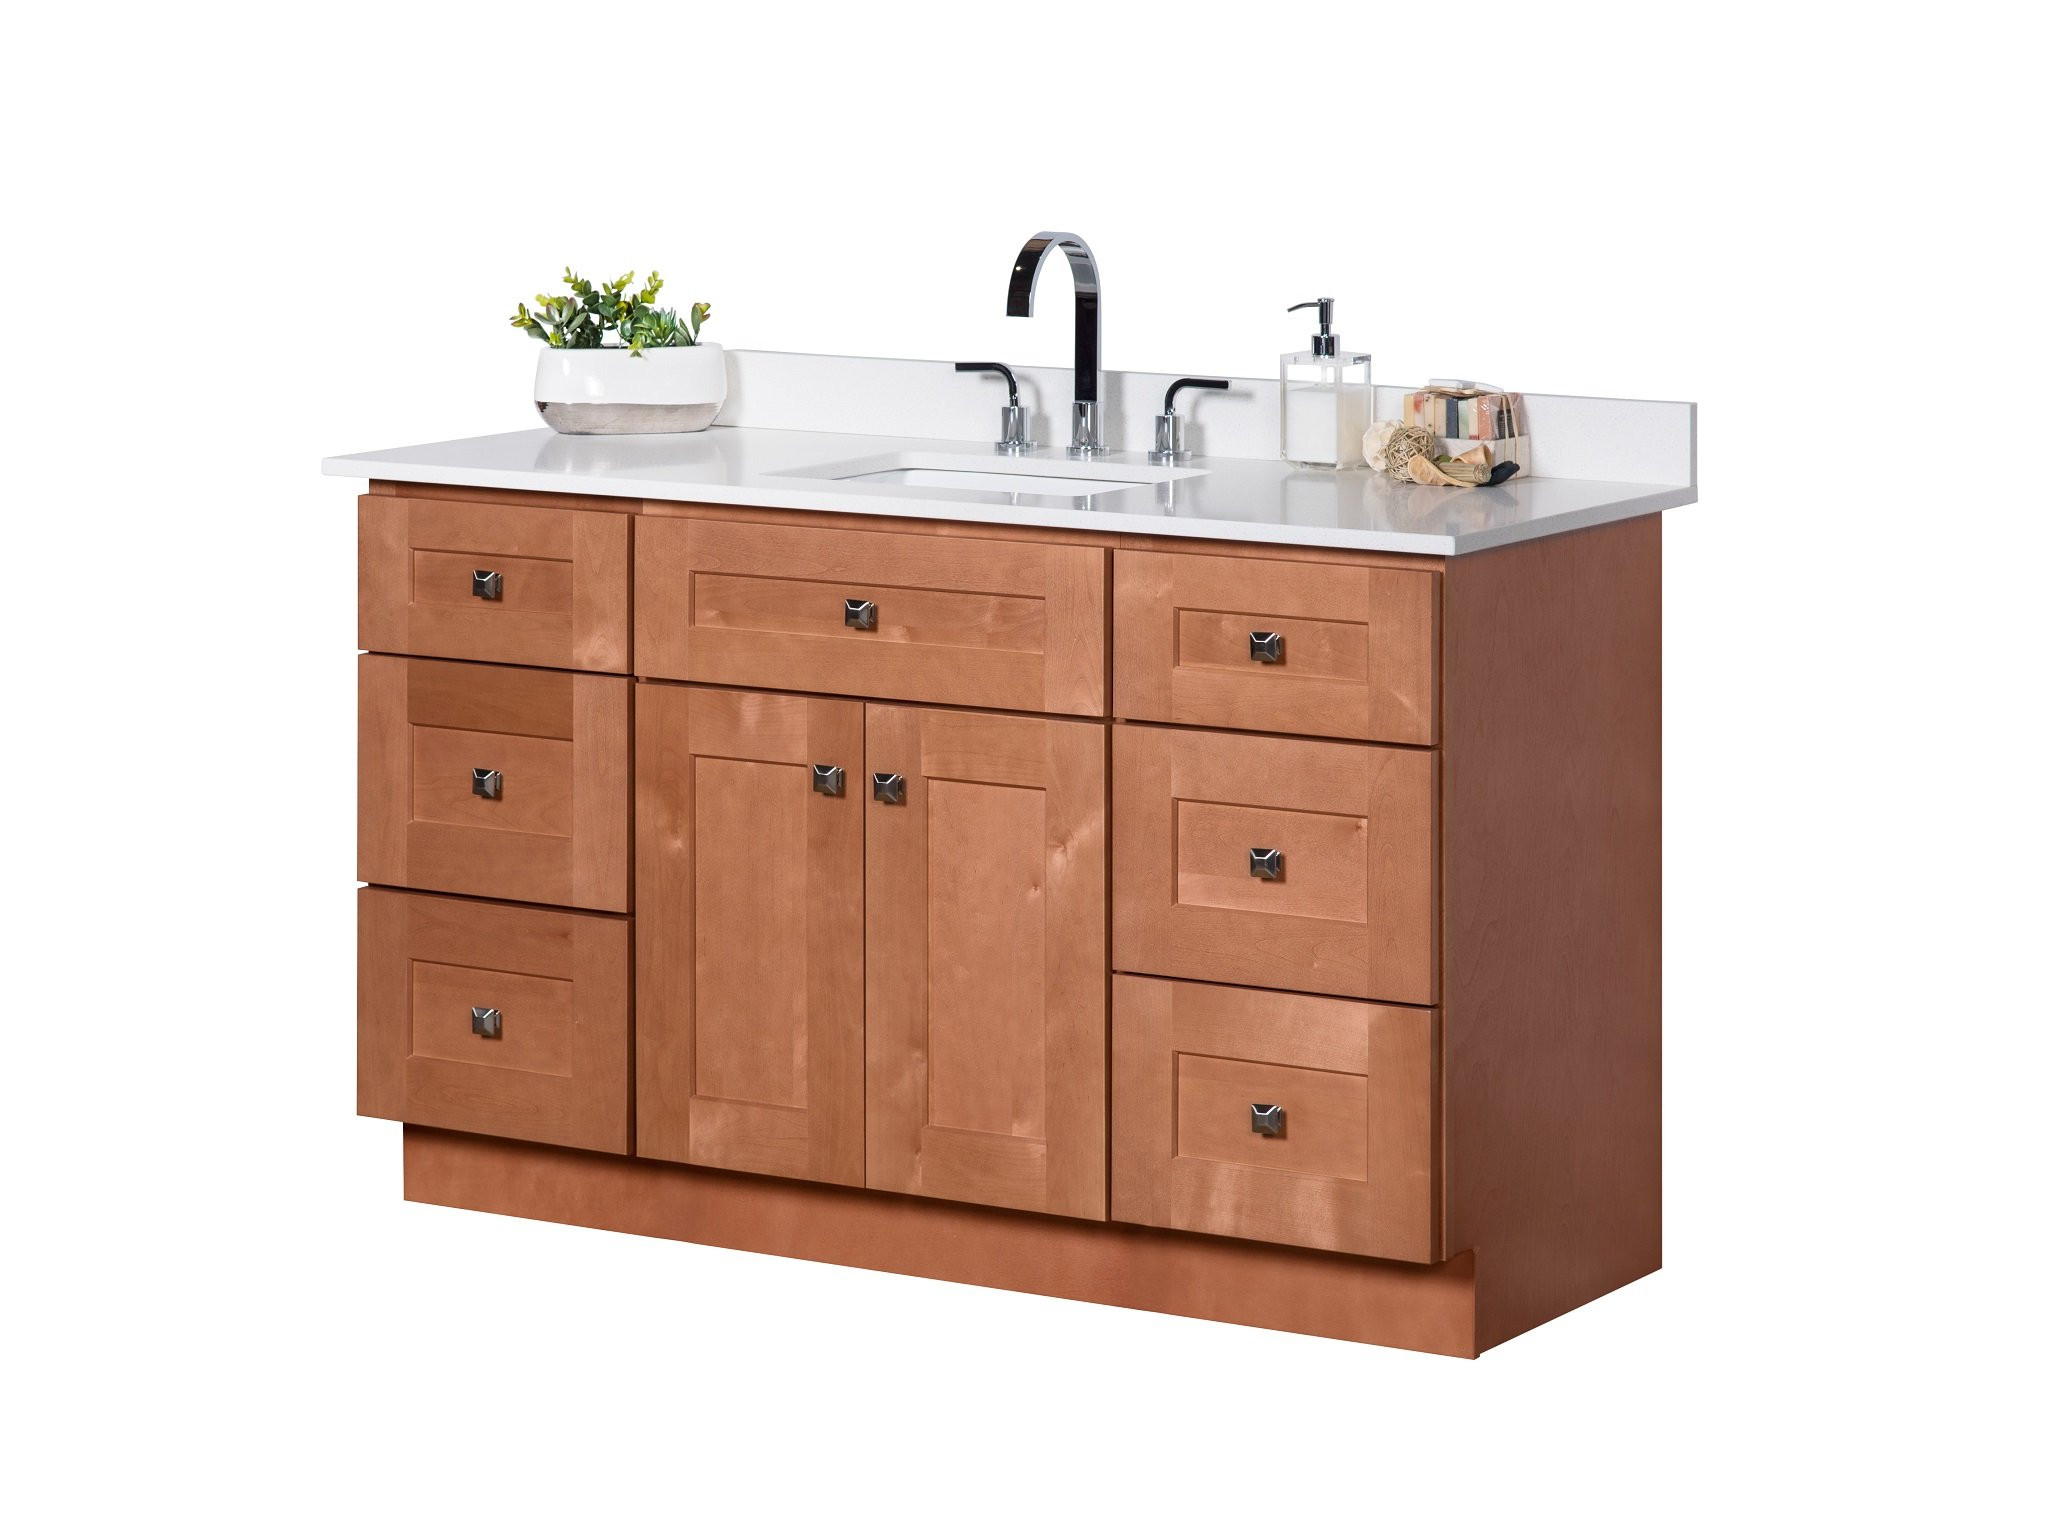 Maple Bathroom Vanity
 54 ̎ Single Sink Maple Wood Bathroom Vanity in Almond